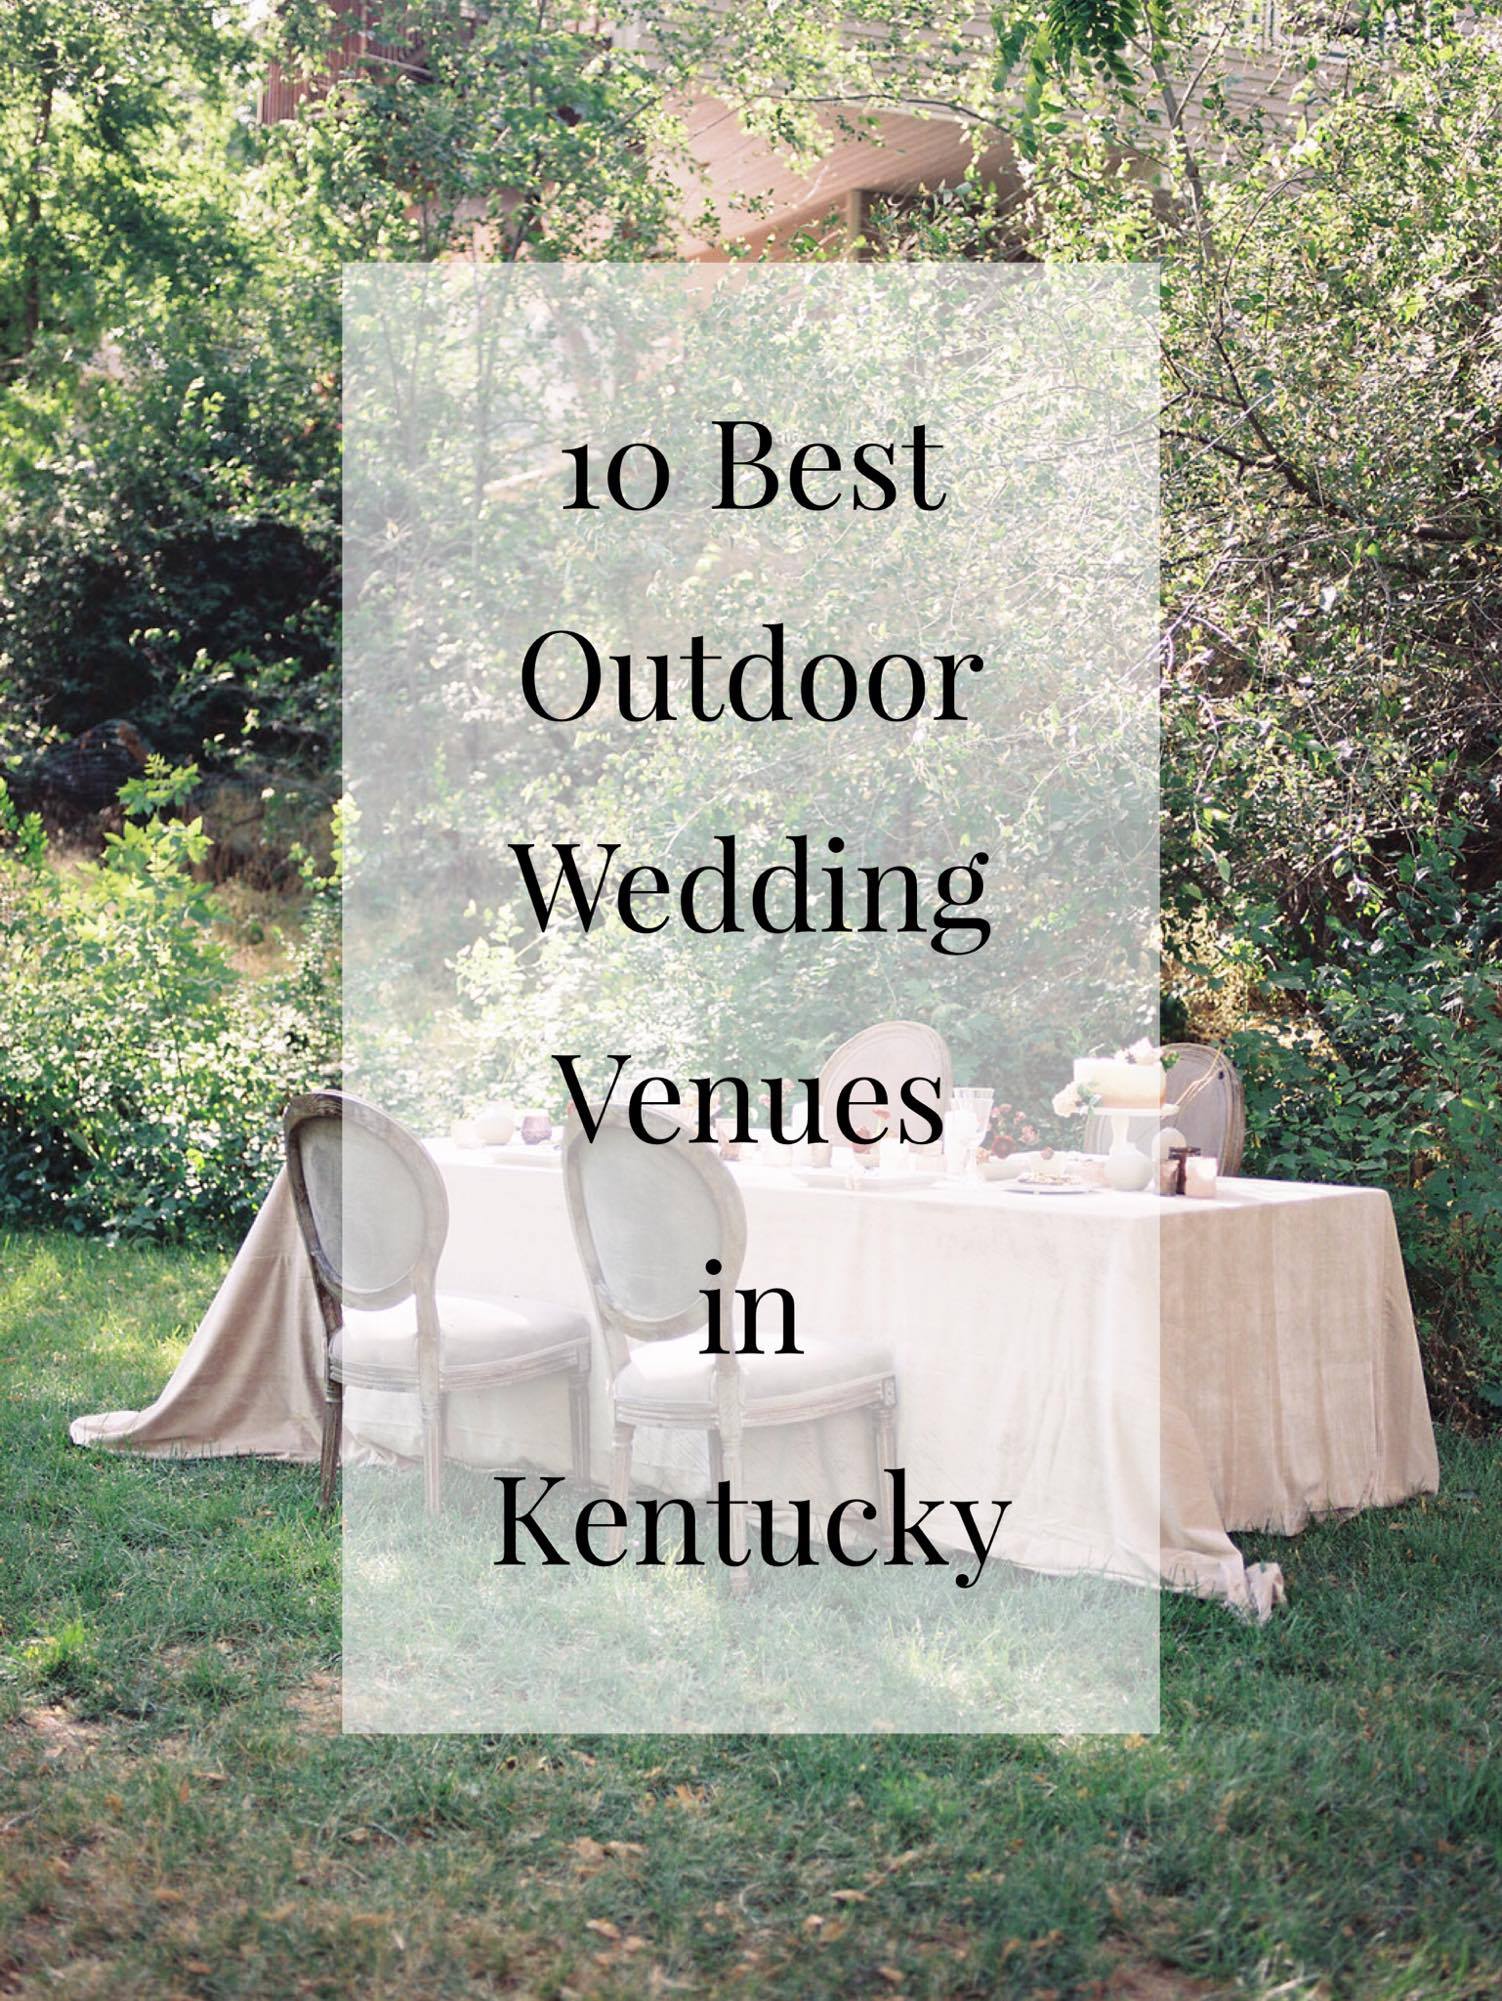 10 Best Outdoor Wedding Venues in Kentucky